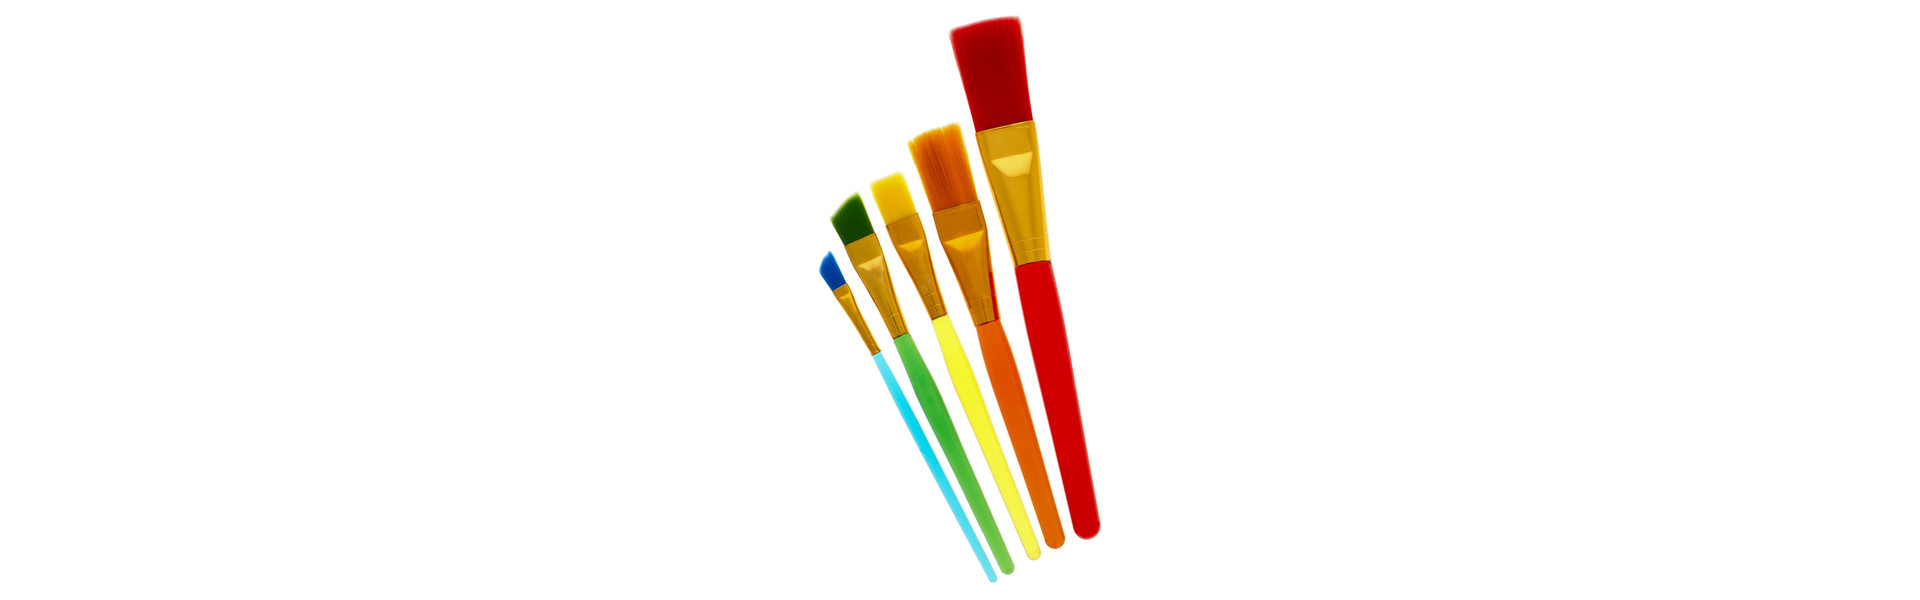 Colourful Paint Brush Set 5PC - $2 at Dollarama